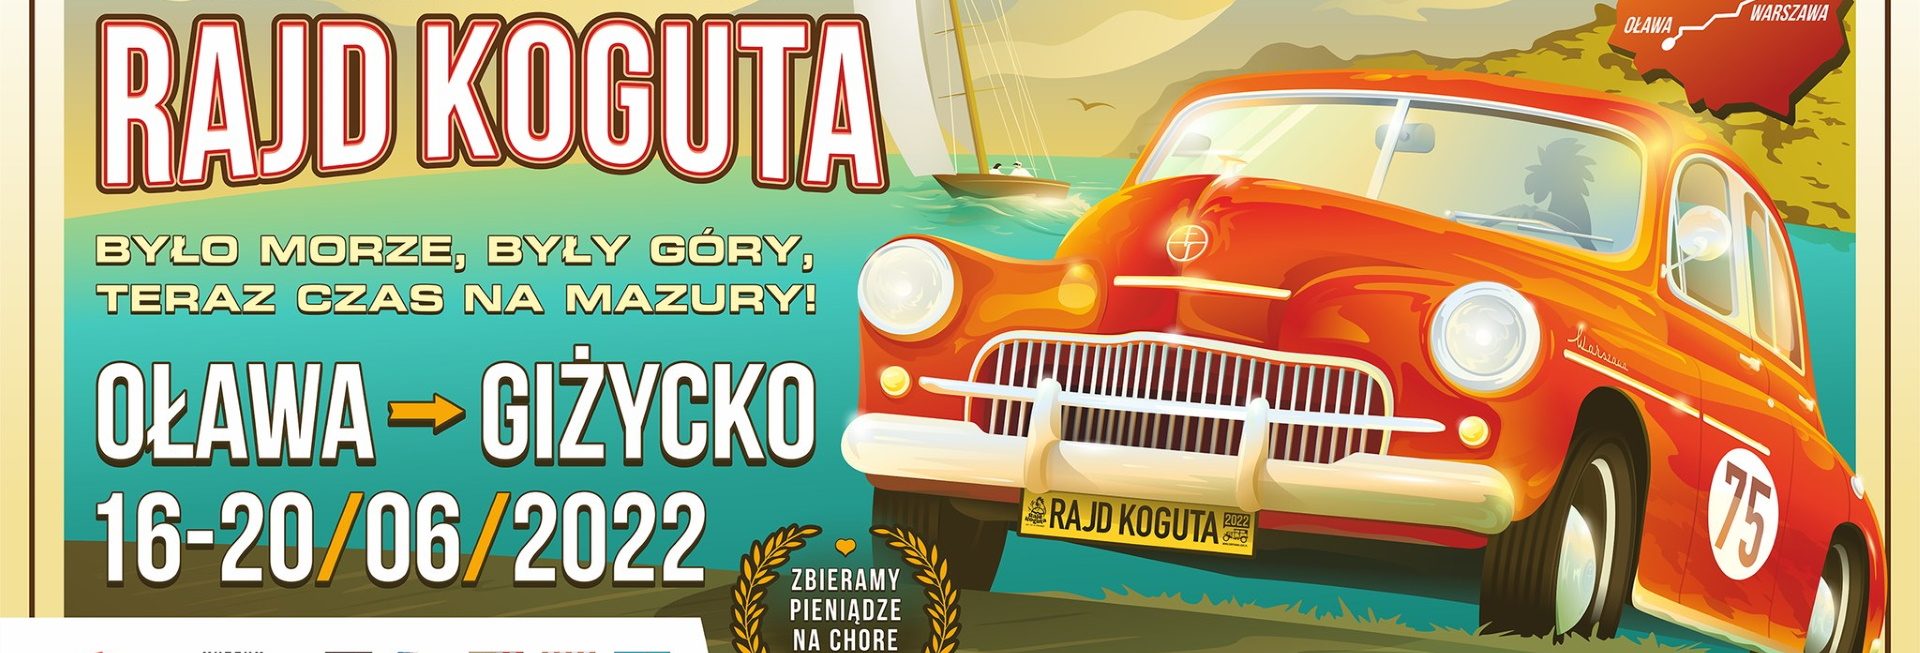 Plakat graficzny zapraszający na 6. edycję Charytatywnego Rajdu Koguta 2022 Oława - Giżycko.  